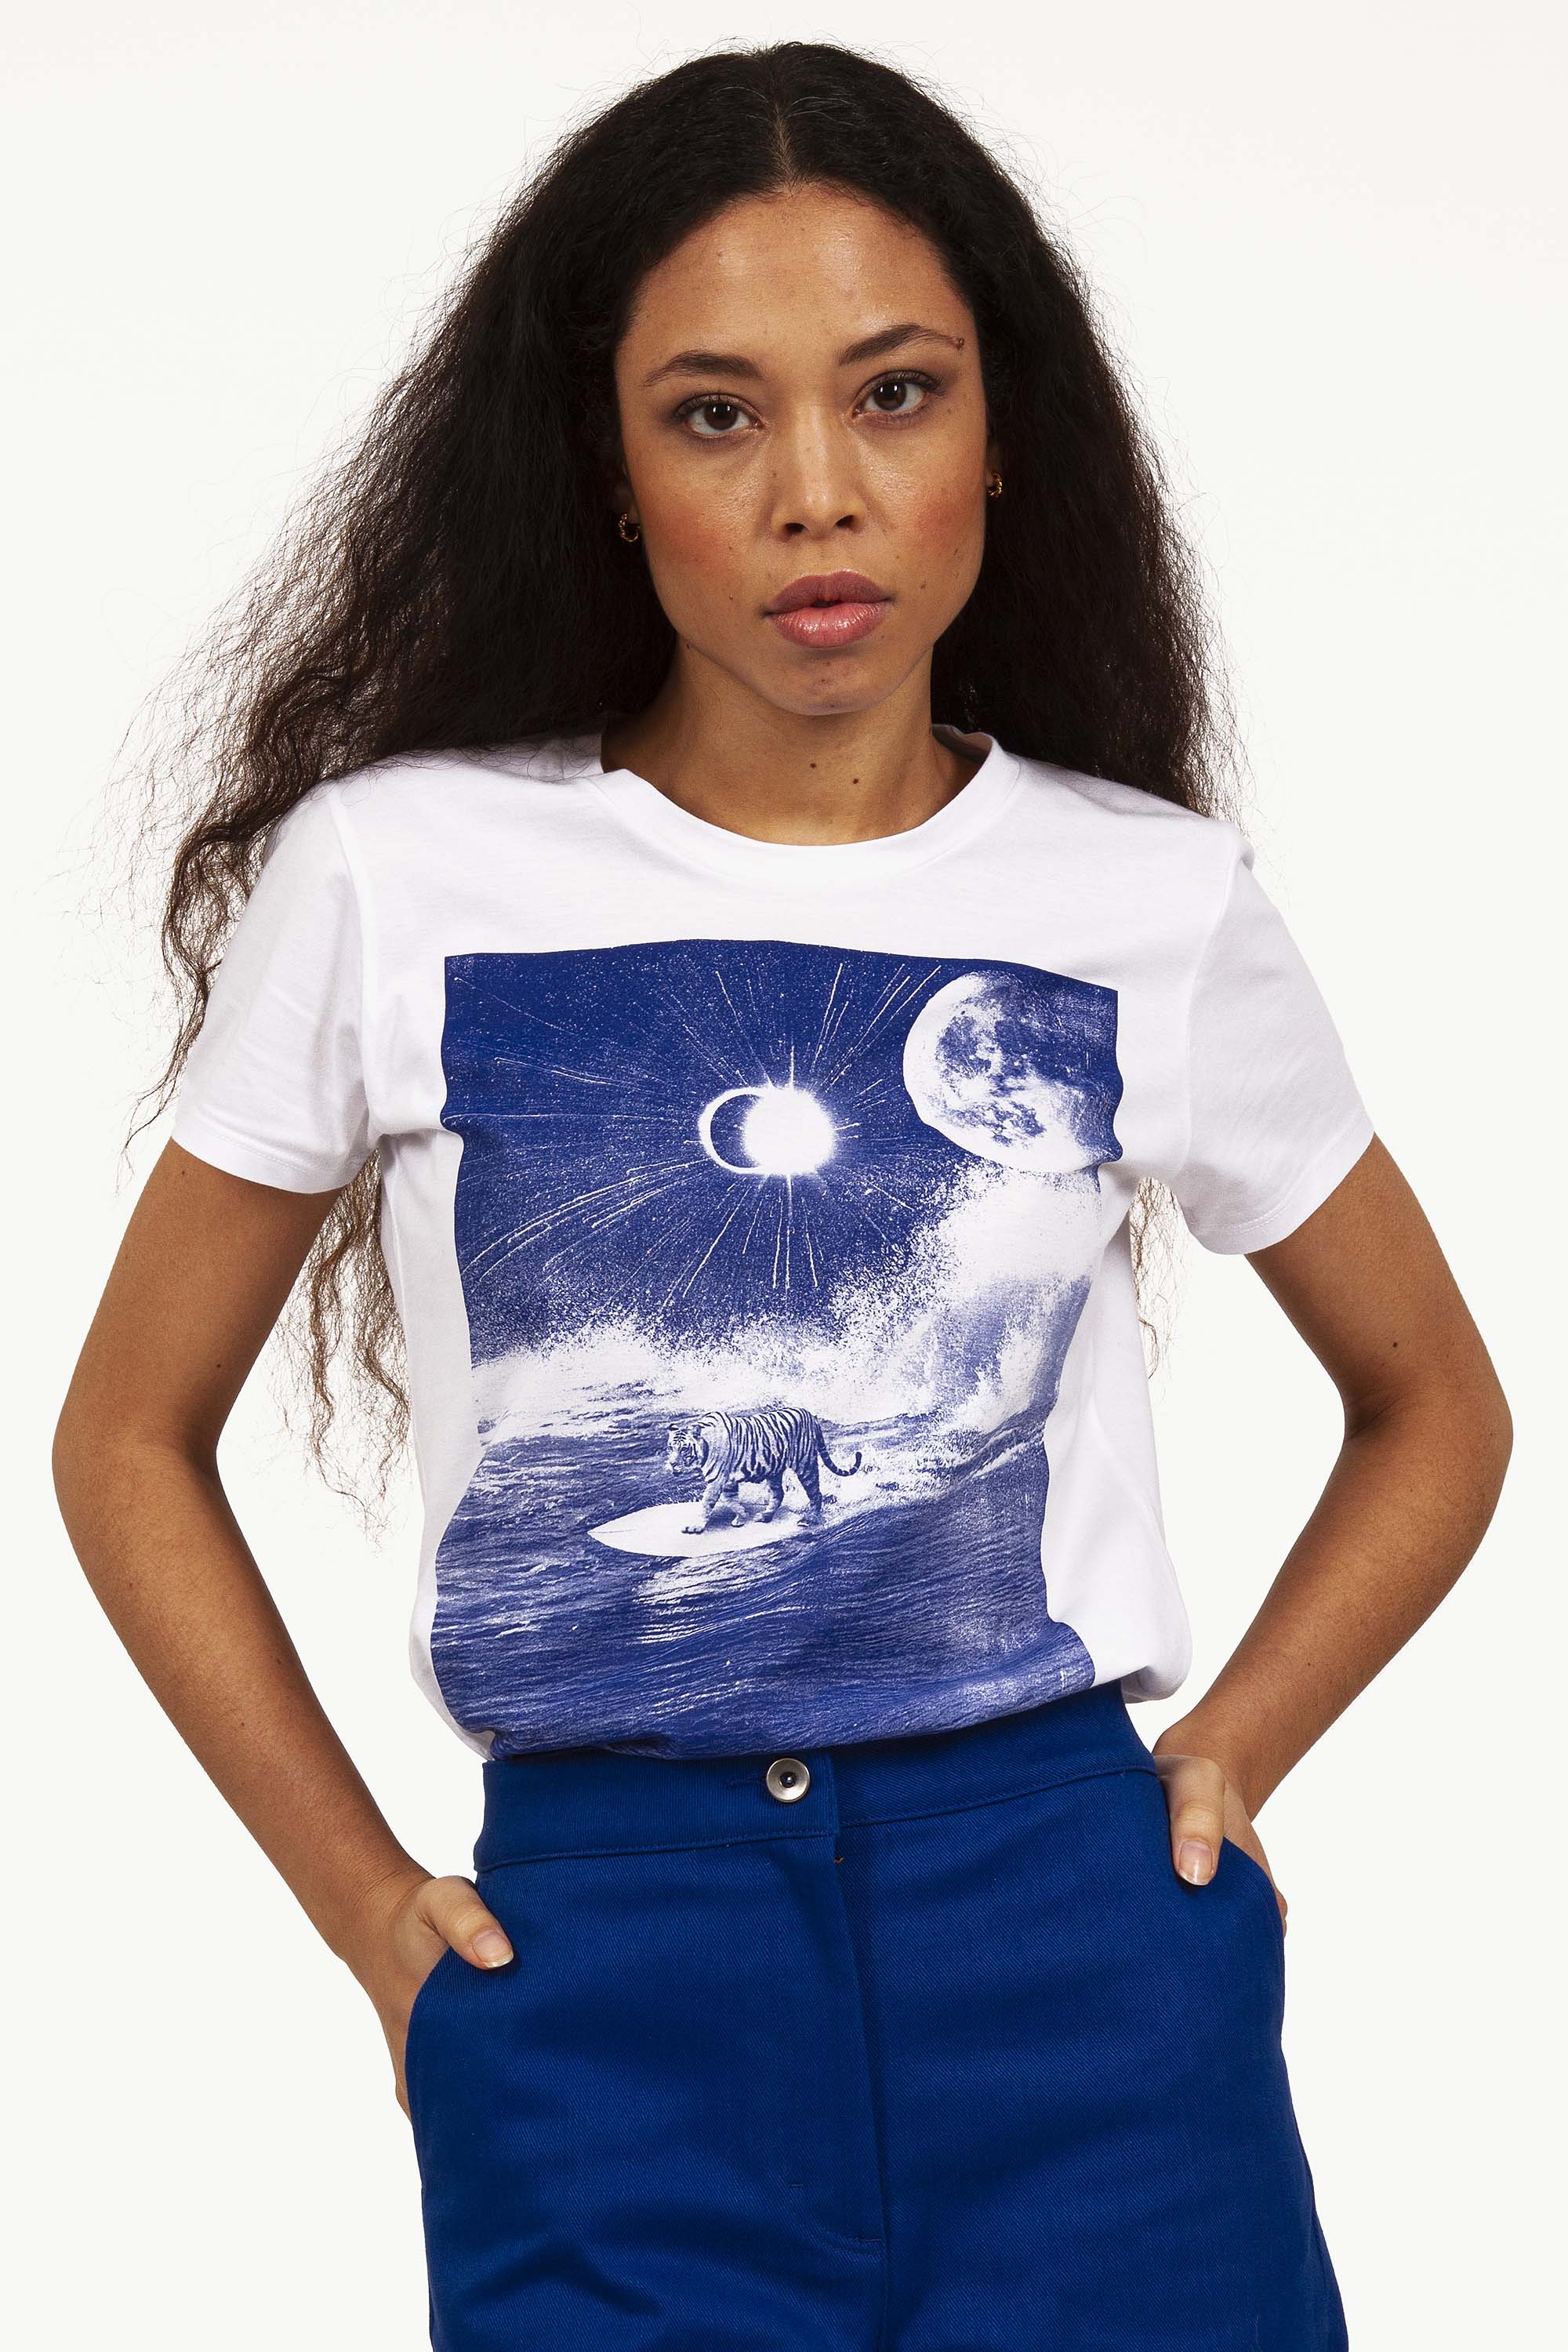  femme avec tee shirt imprimé bleu se tenant debout avec un lune sur le desin 